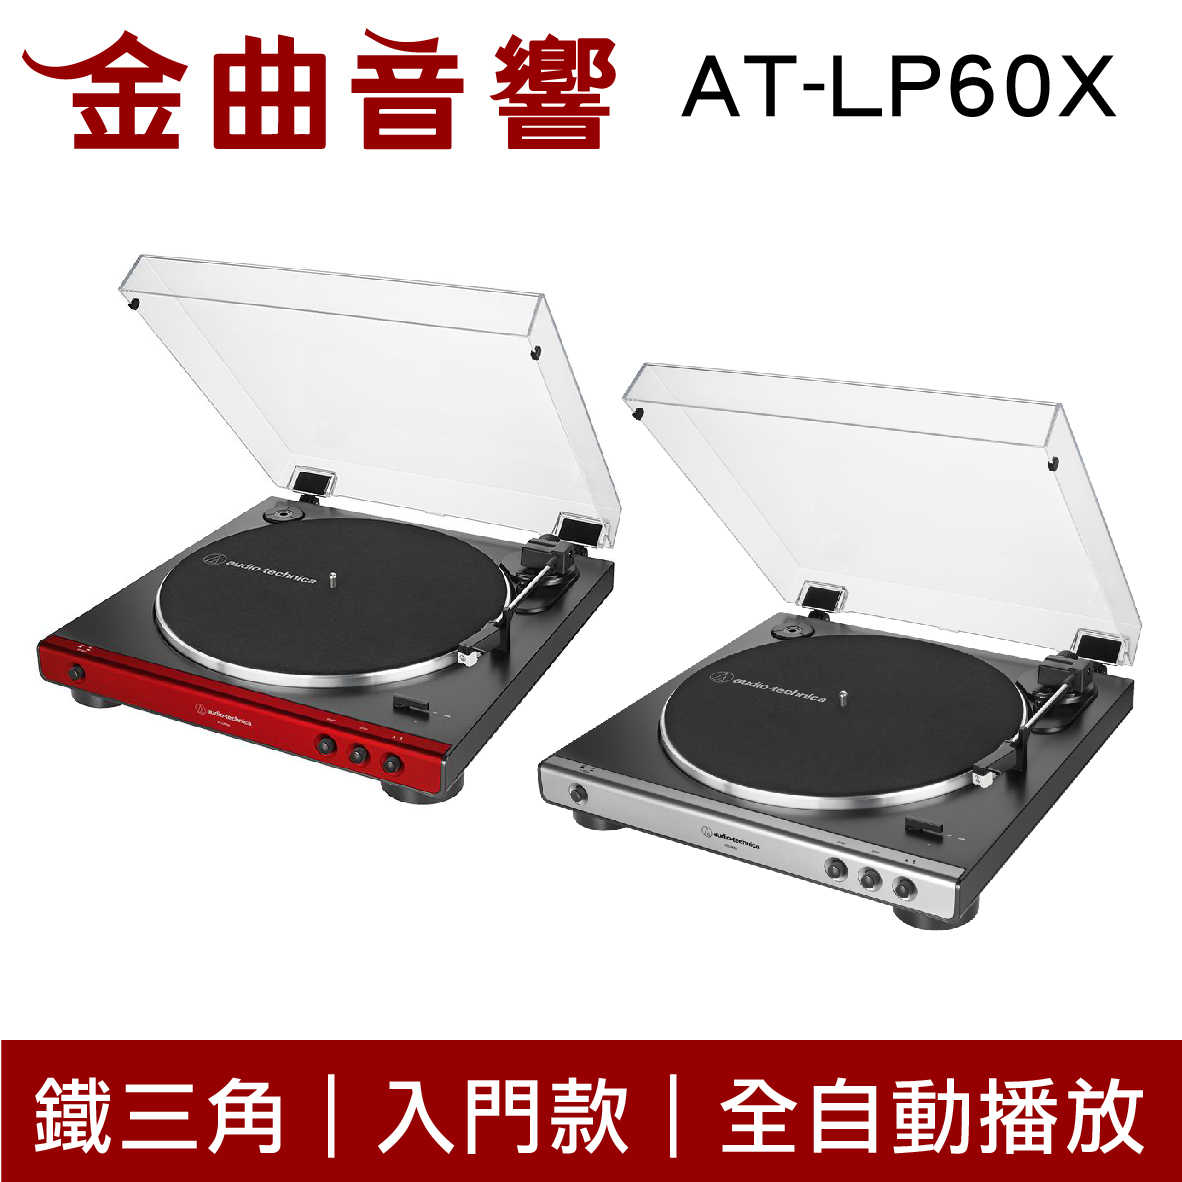 鐵三角 AT-LP60X 灰紅兩色 入門款 黑膠唱盤機 | 金曲音響